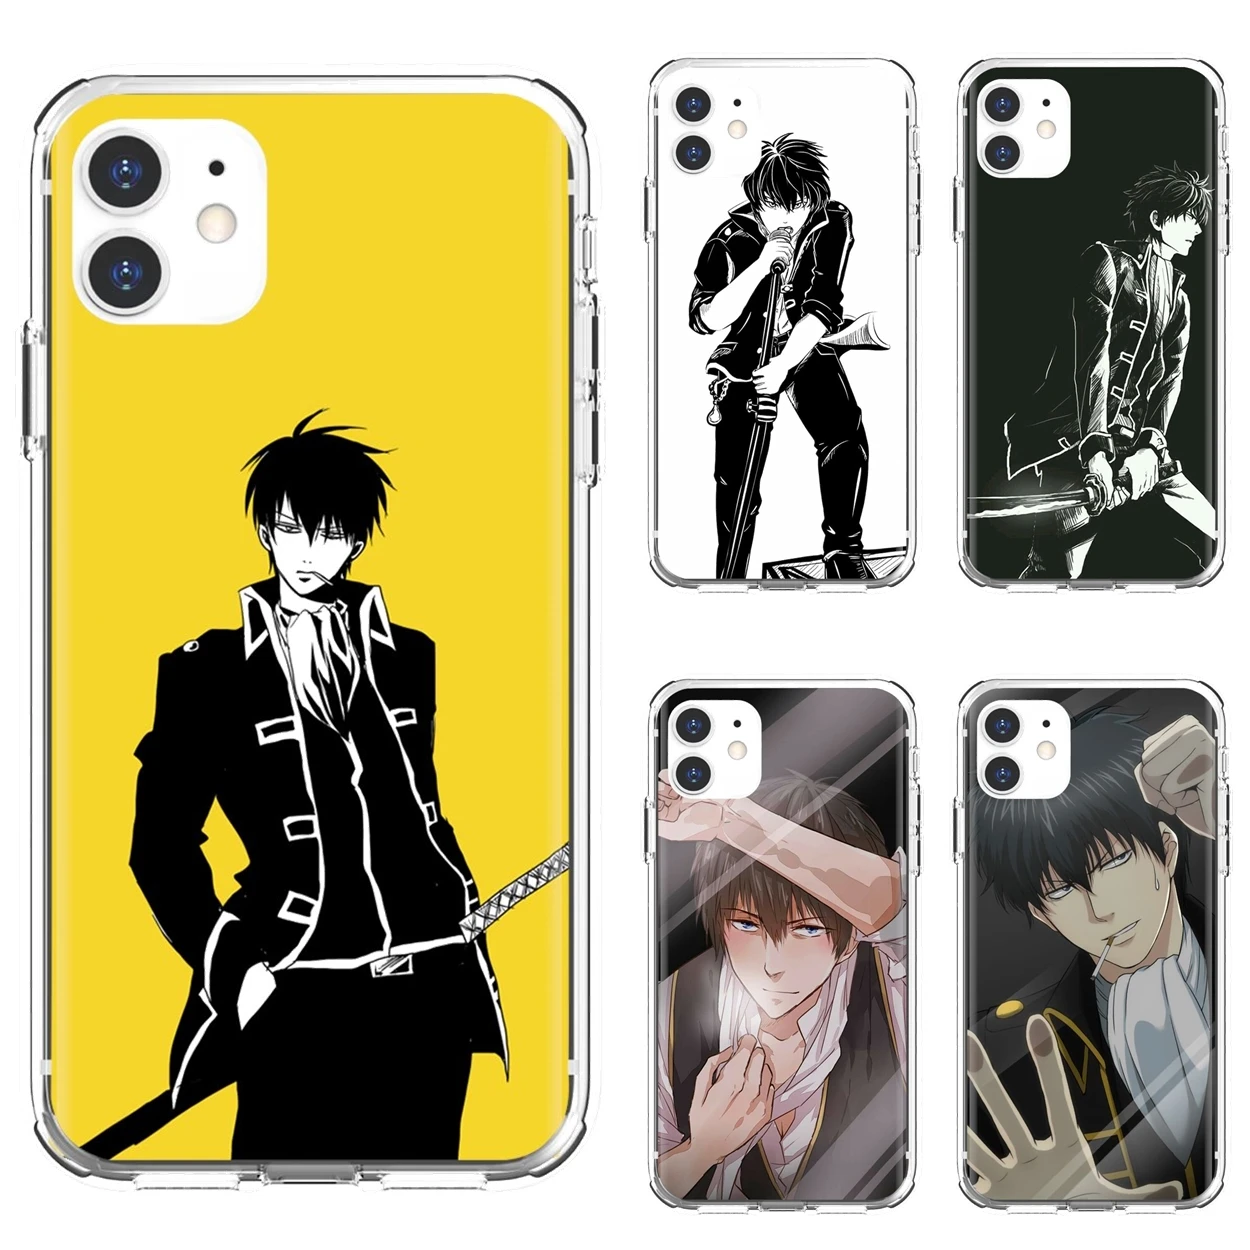 

GINTAMA Hijikata Toushirou Anime Phone Case For iPhone 10 11 12 13 Mini Pro 4S 5S SE 5C 6 6S 7 8 X XR XS Plus Max 2020